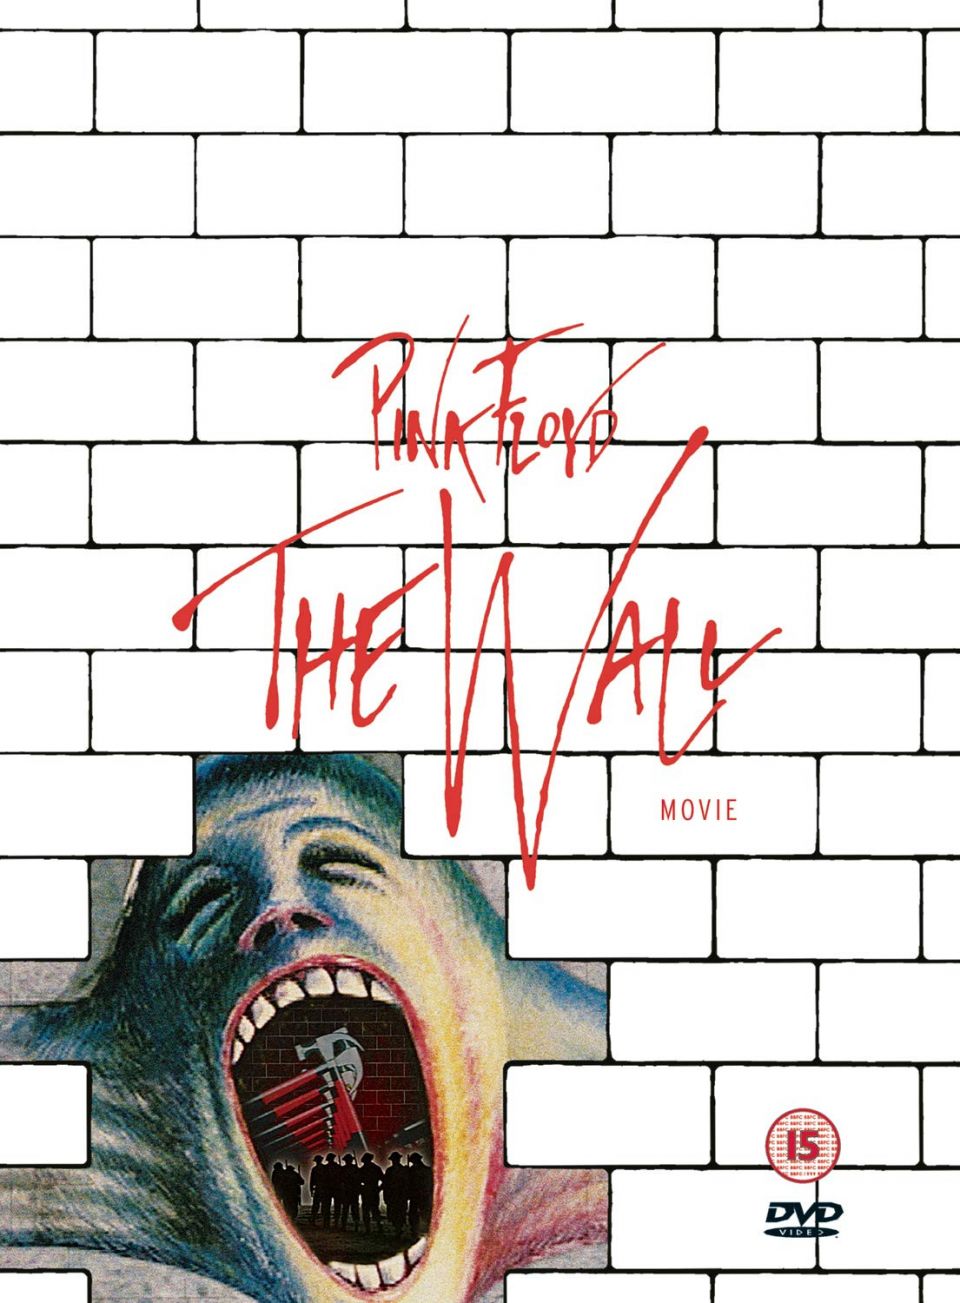 Pink Floyd | The Wall Amazon link: https://amzn.to/3DSQExA